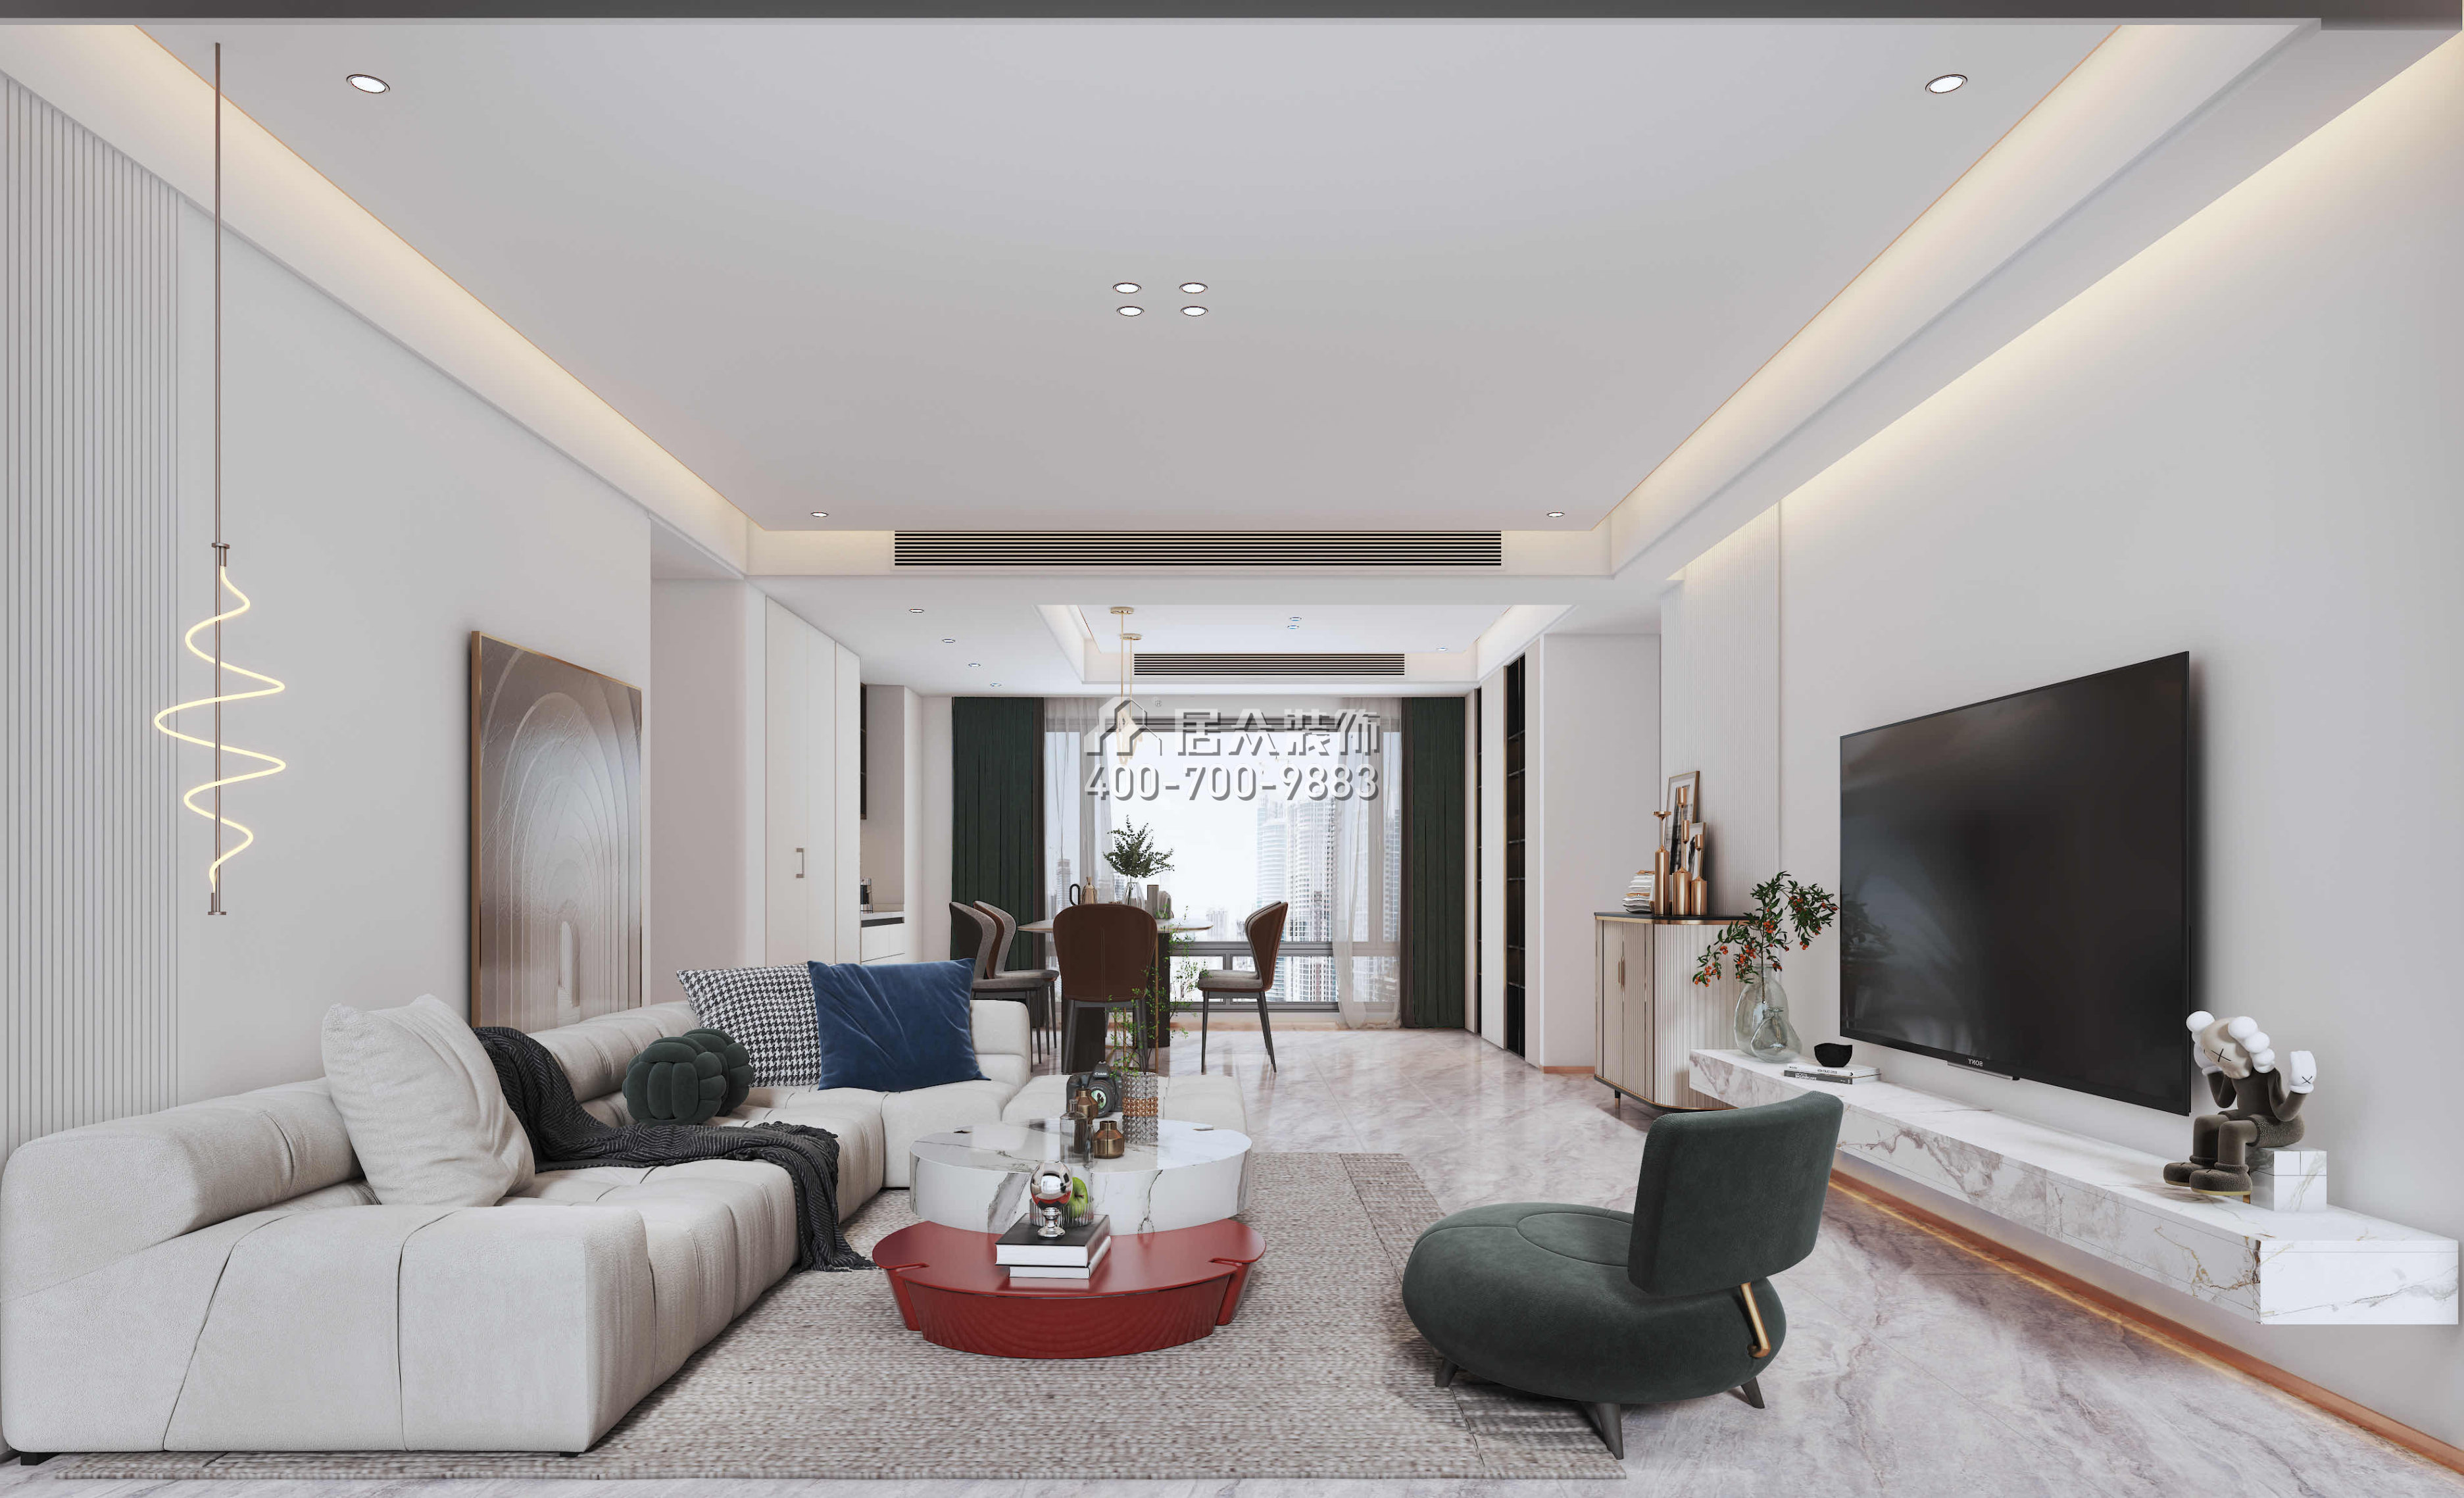 后海公館146平方米現代簡約風格平層戶型客廳裝修效果圖